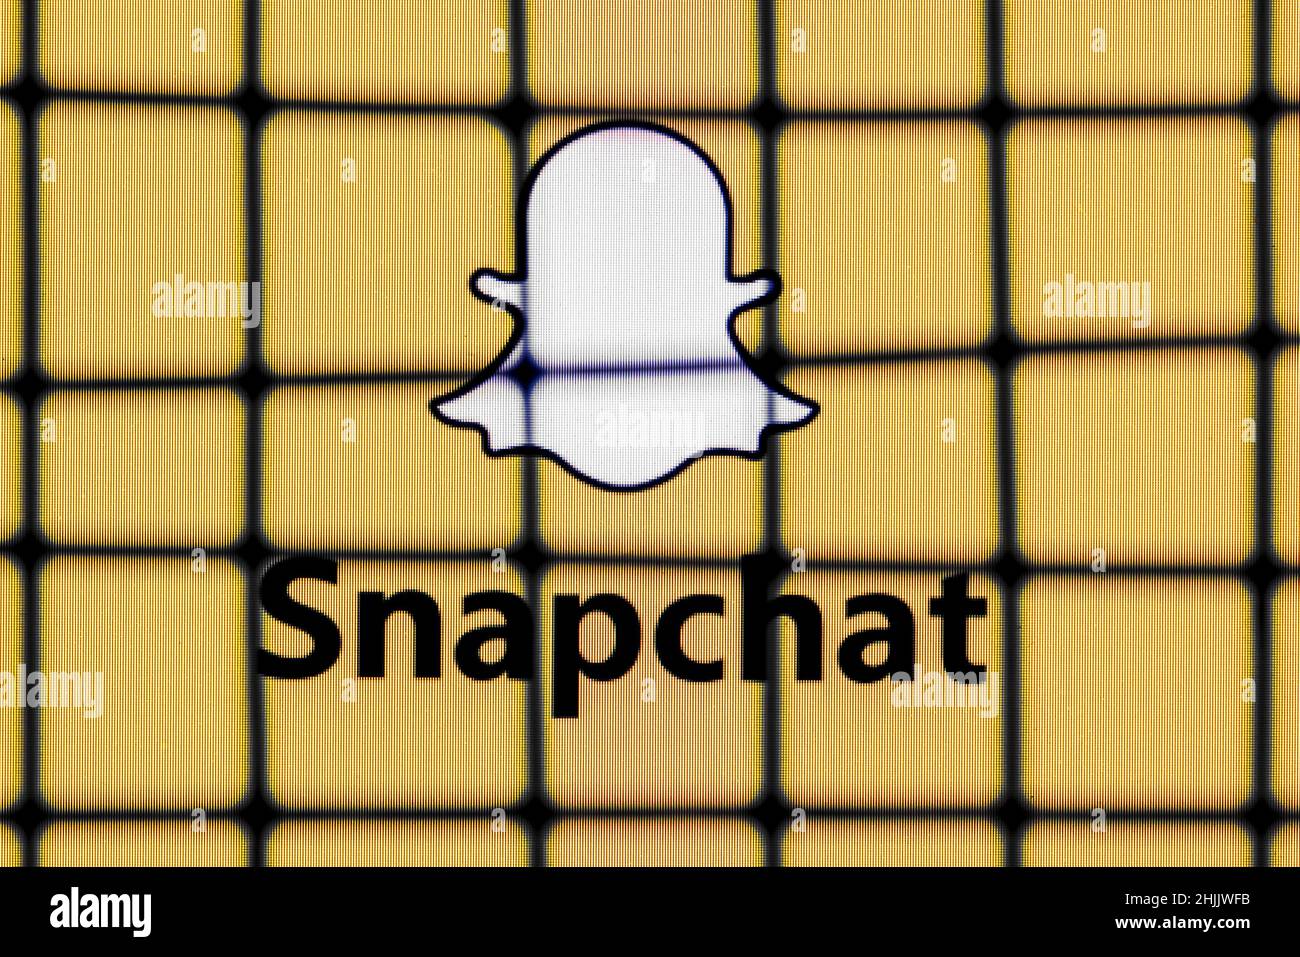 Le logo du service de messagerie instantanée Snapchat derrière les barres. Le concept de censure et d'interdiction Snapchat. Banque D'Images